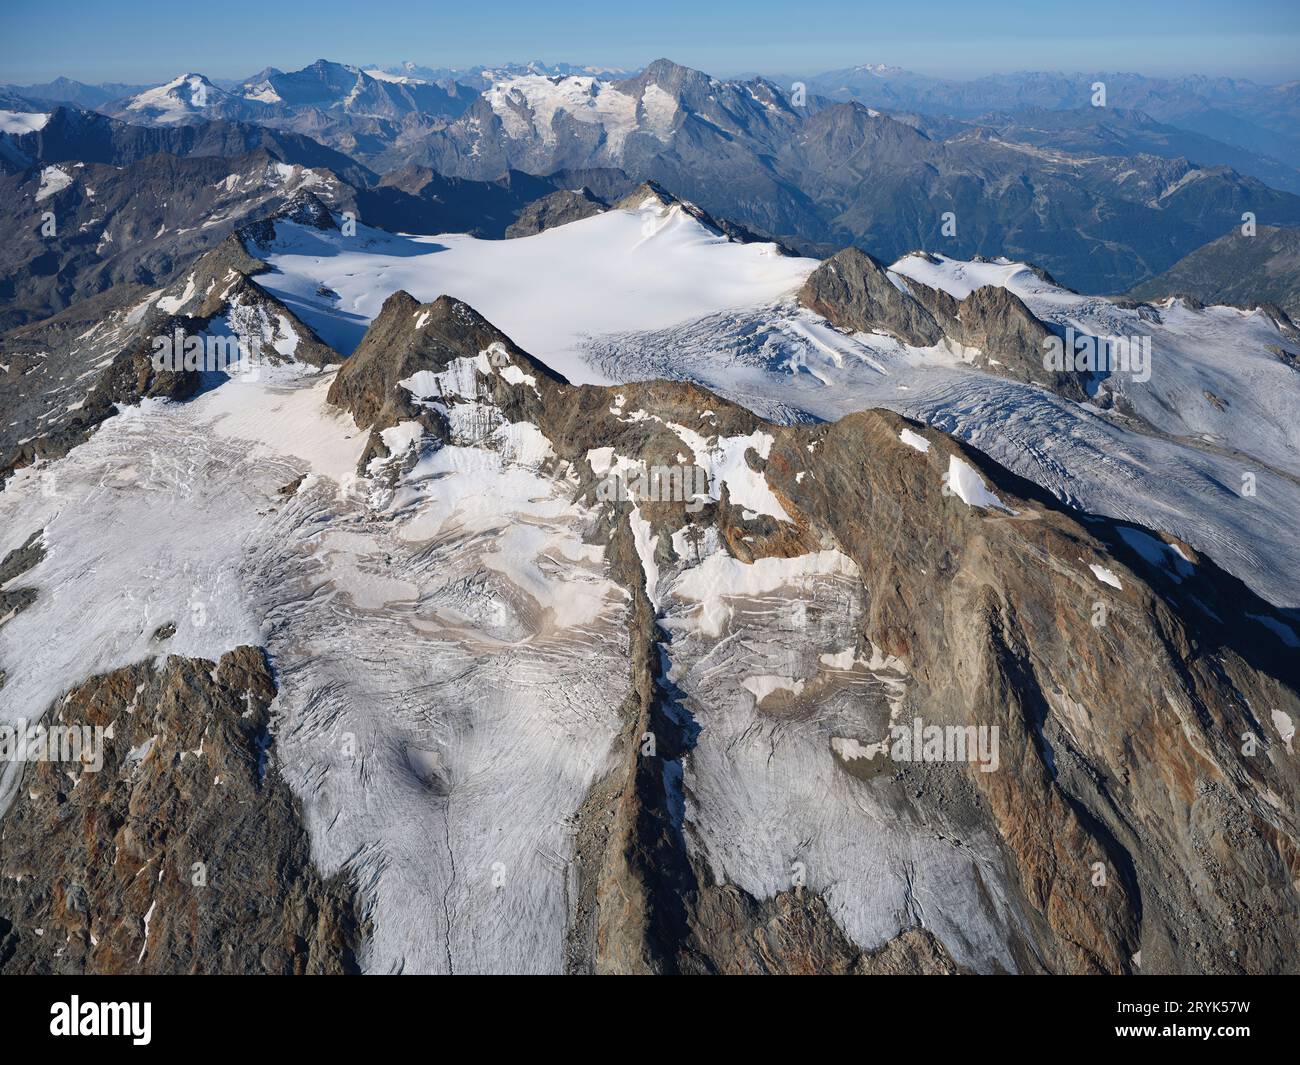 VUE AÉRIENNE. Testa del Rutor Peak (3486 mètres) vu du nord-est. La Thuile, Val Grisenche, Vallée d'Aoste, Italie. Banque D'Images